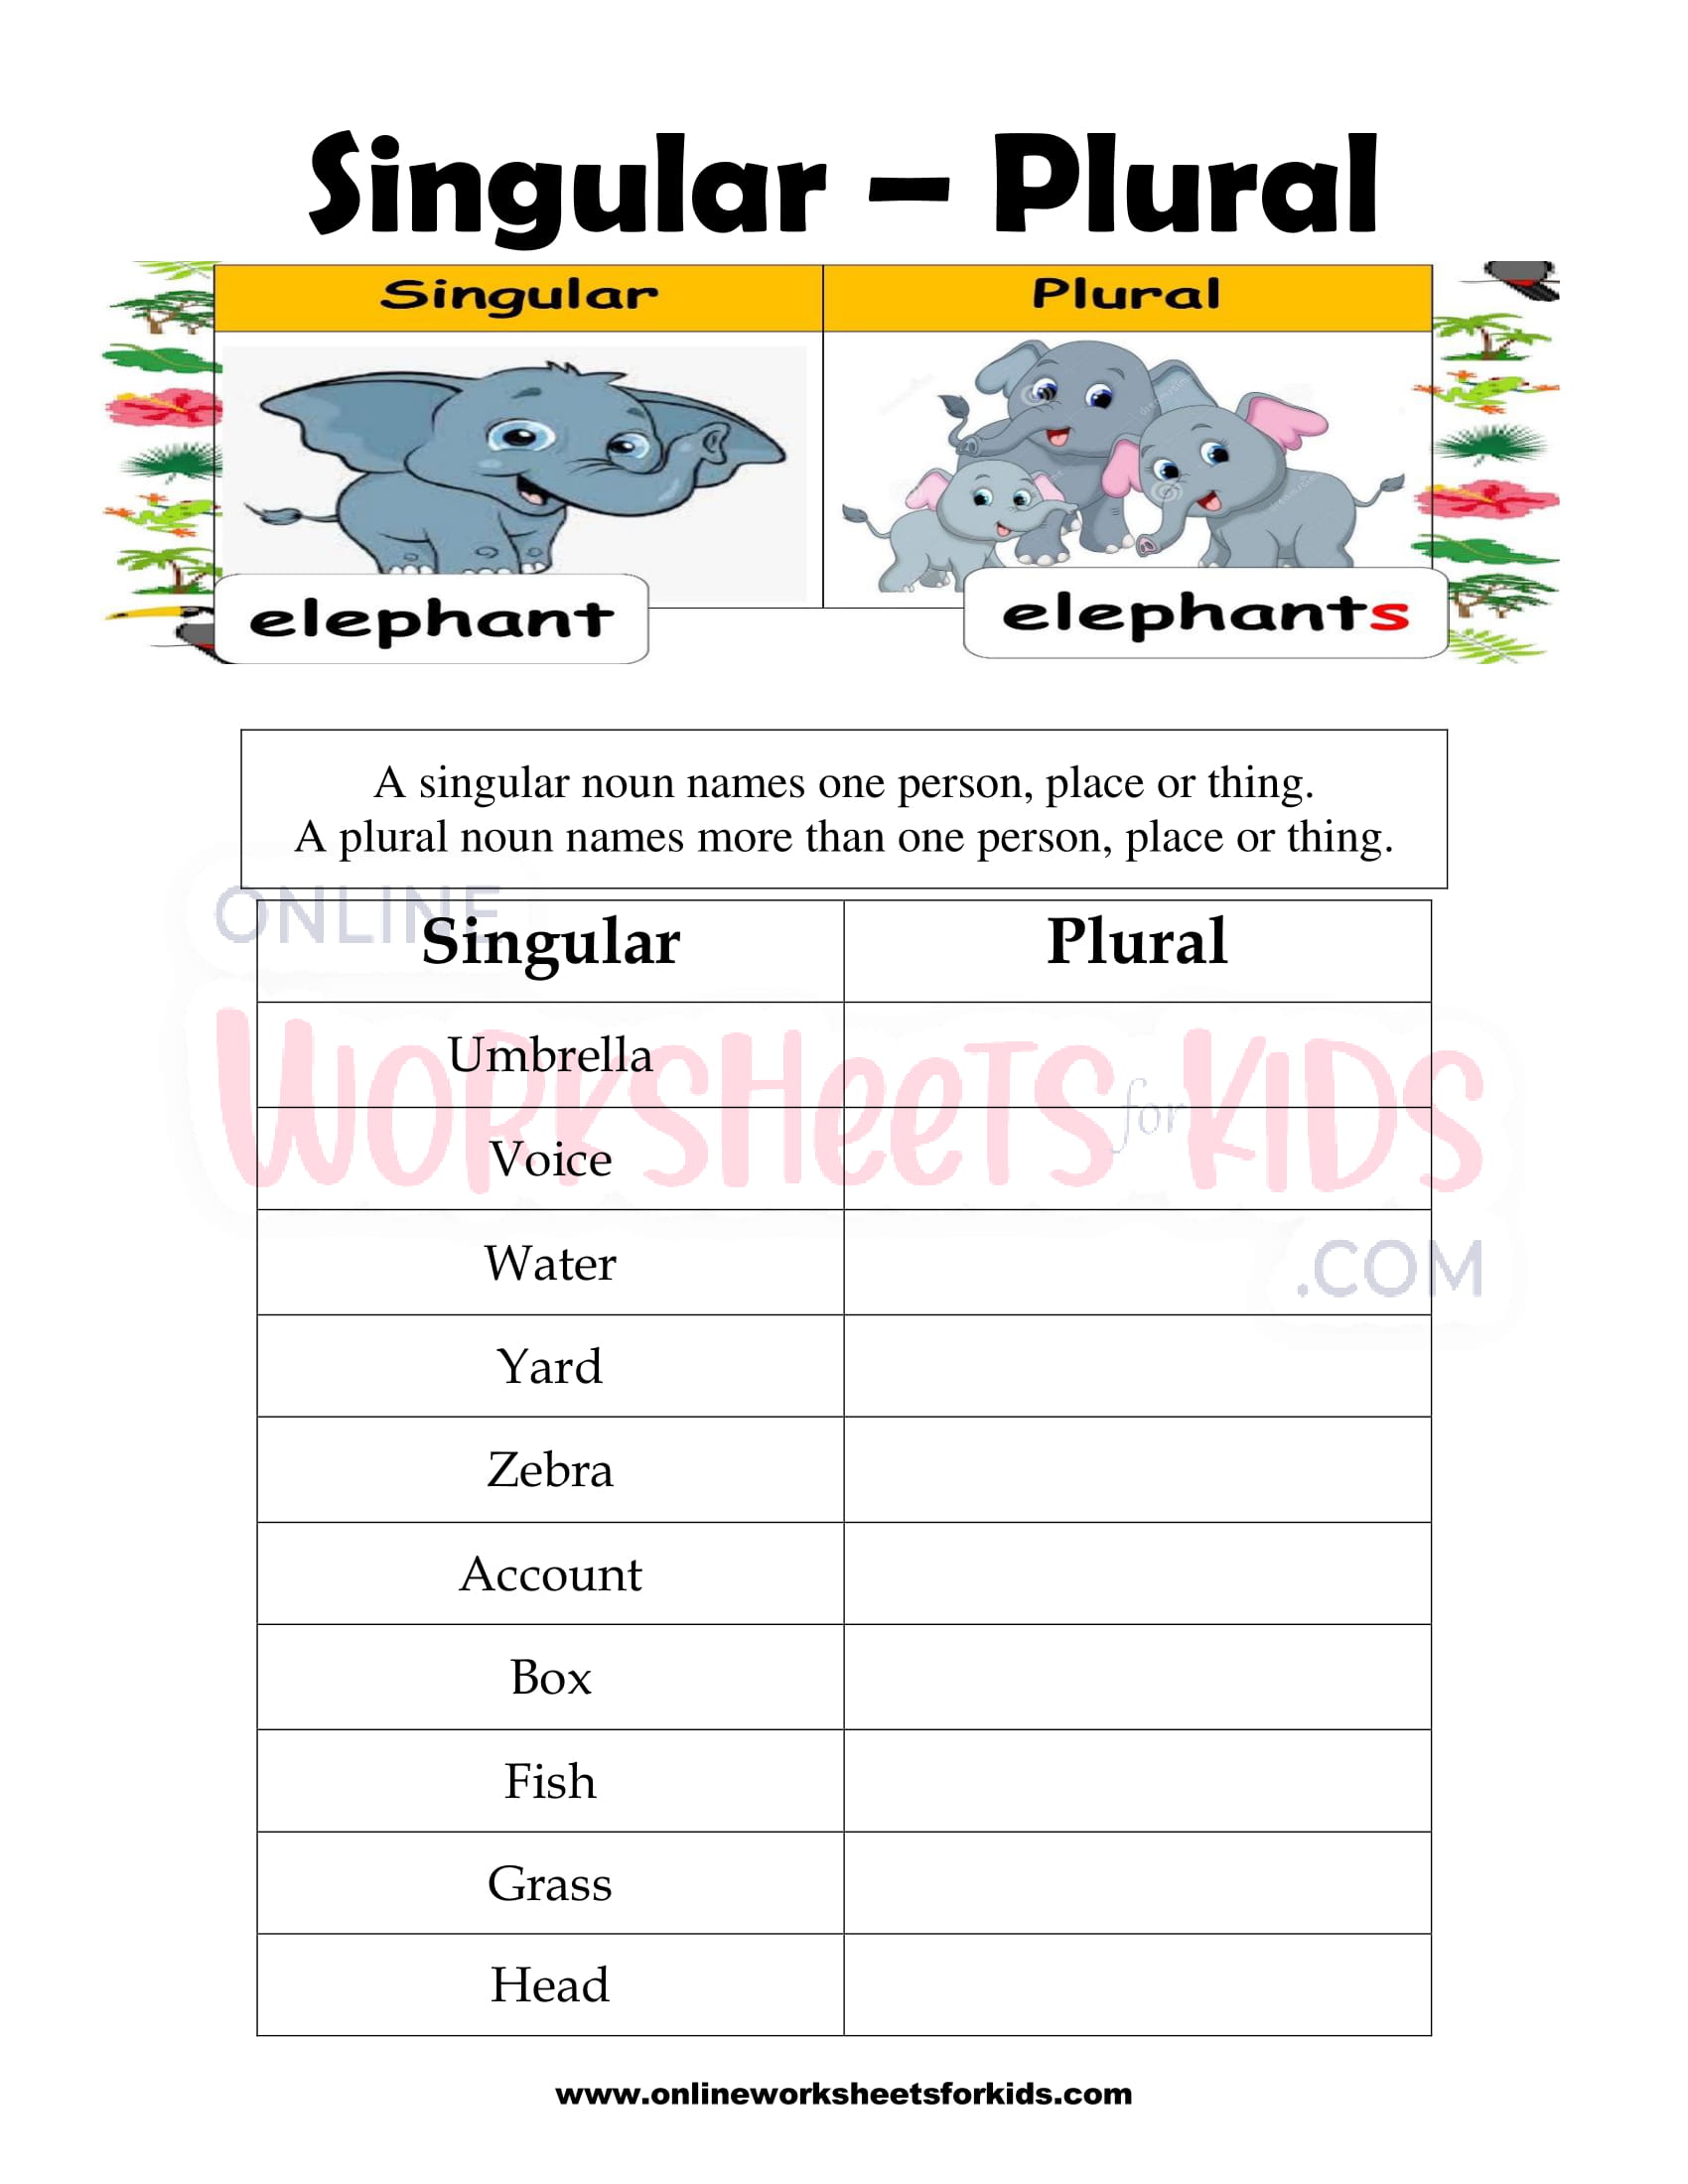 singular-and-plural-nouns-worksheet-5